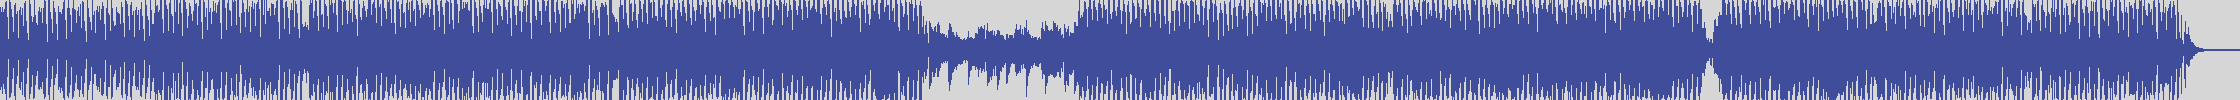 coverland_records [smile1146] Joe Piccino, Alessandro Leuzzi - La Ricciolina [Radio Edit] audio wave form